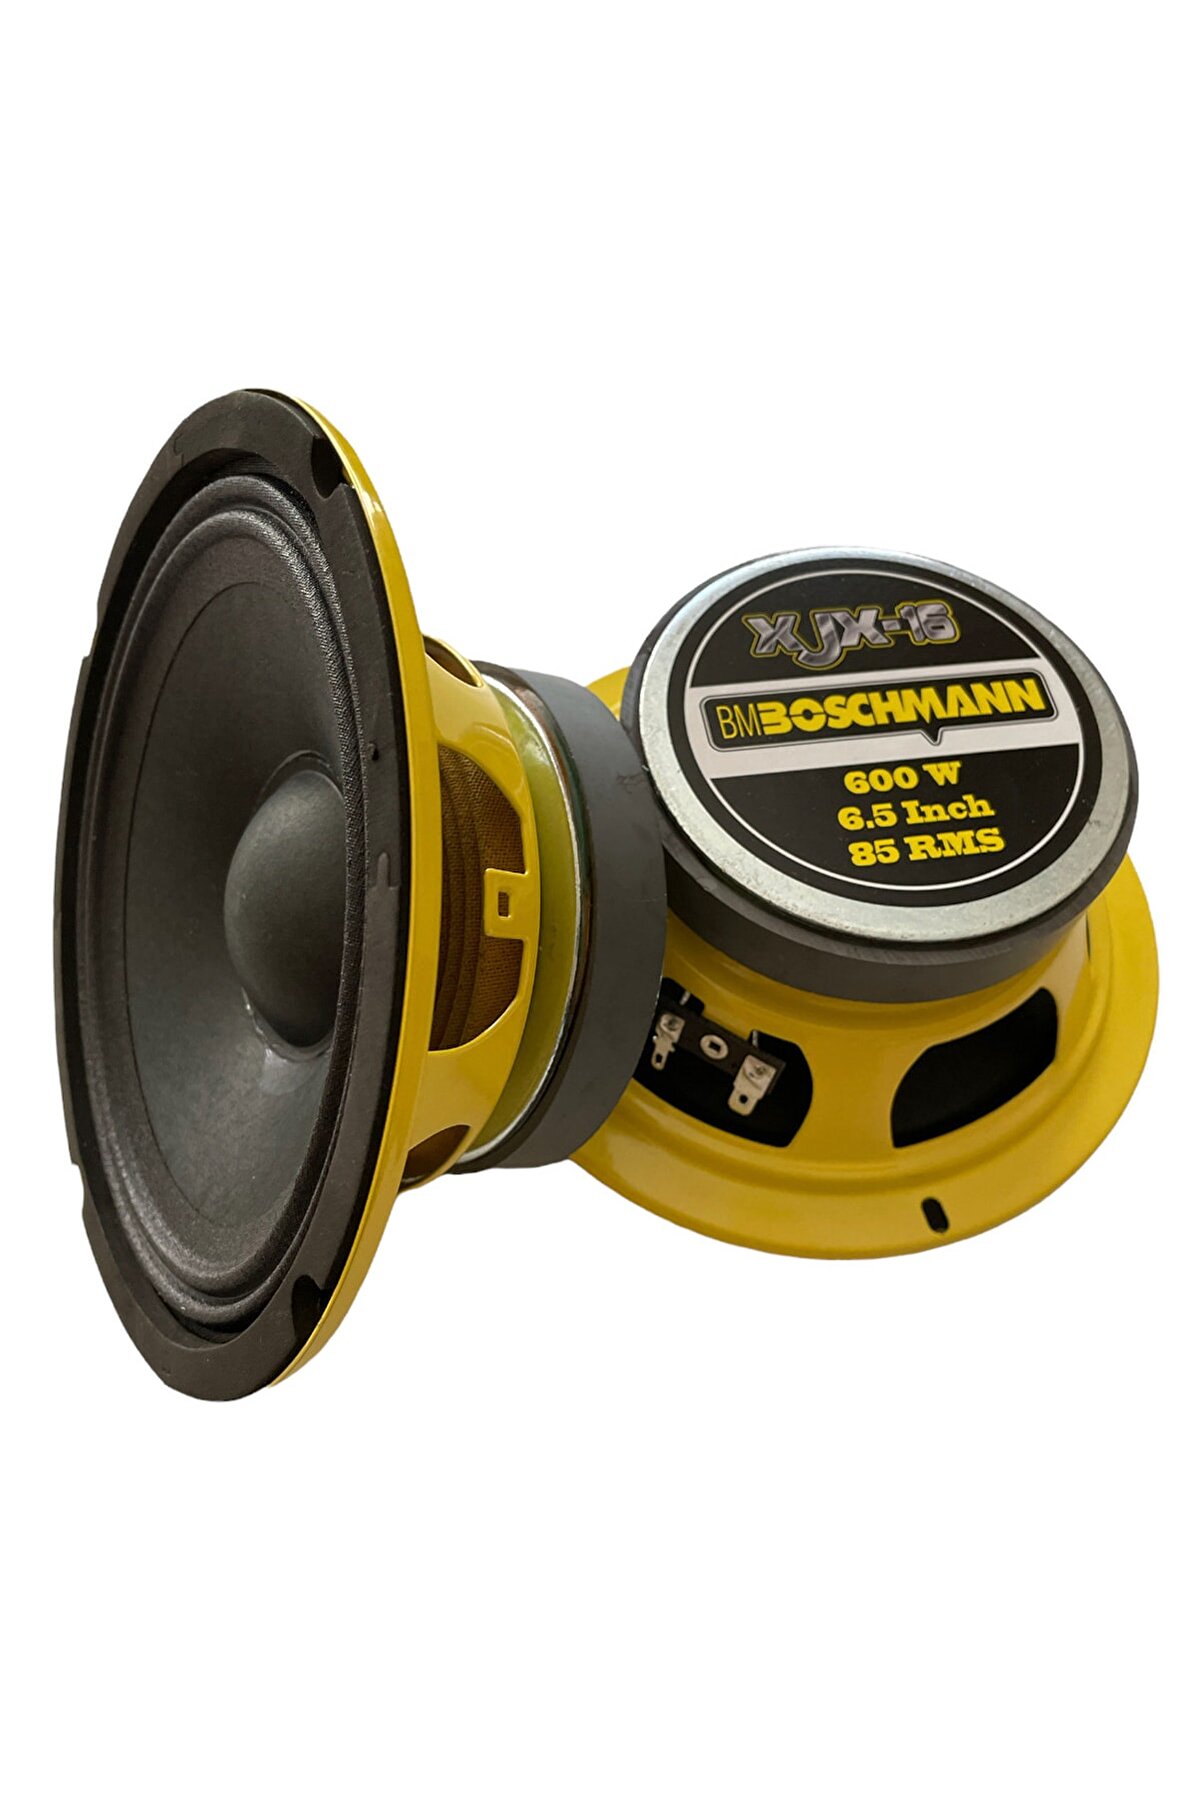 Bm Audio Boschmann 16 Cm Midrange Hoparlör ( 2 Adet )